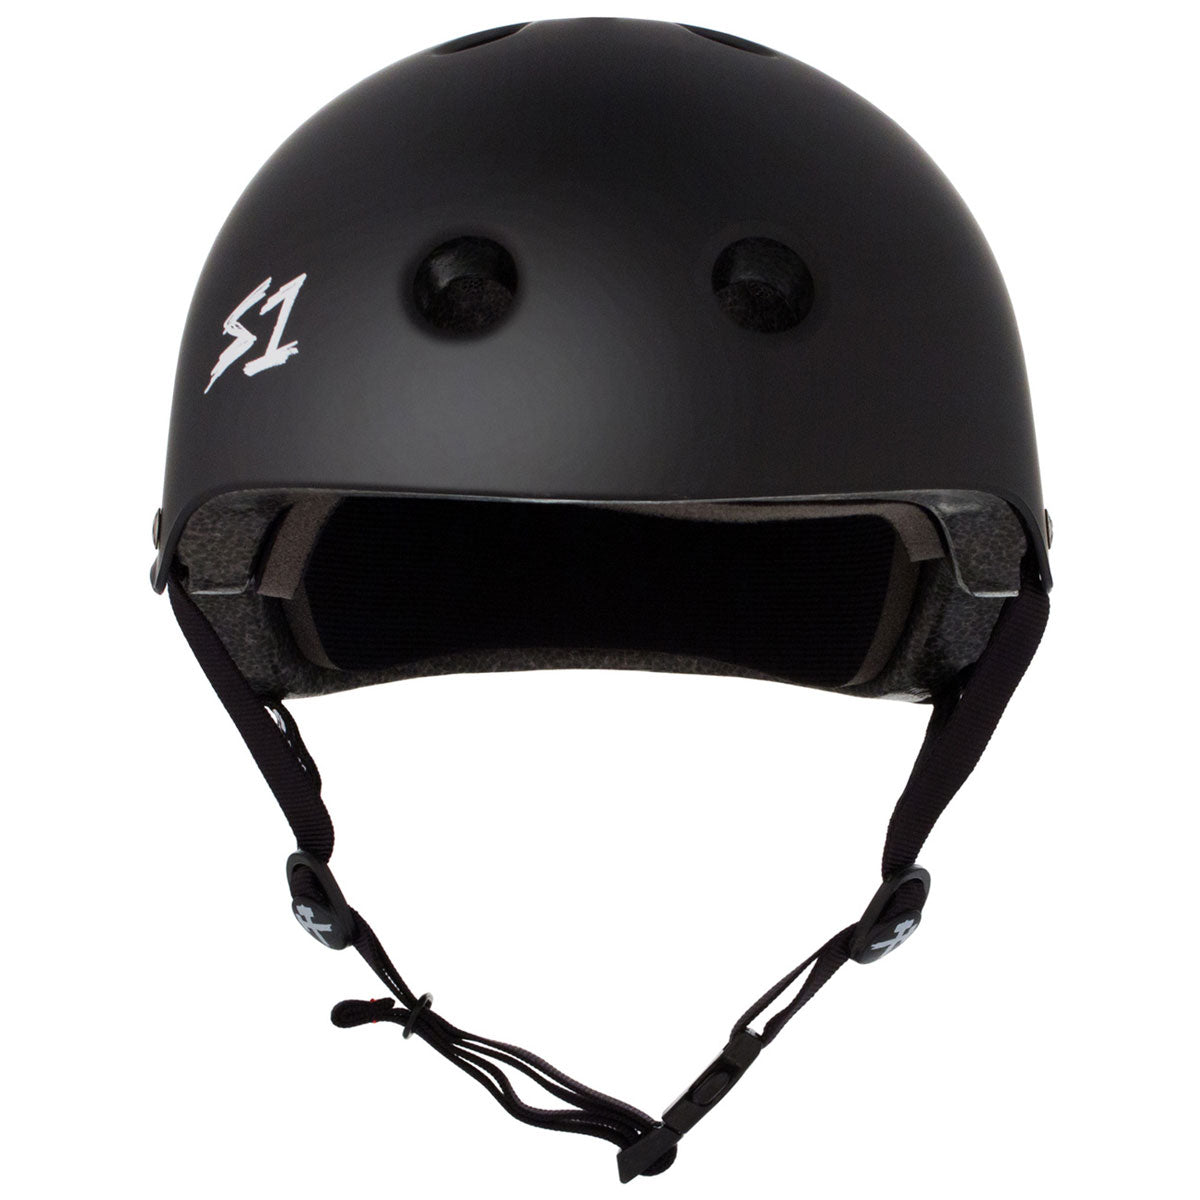 S-One Lifer Helmet - Black Matte image 3